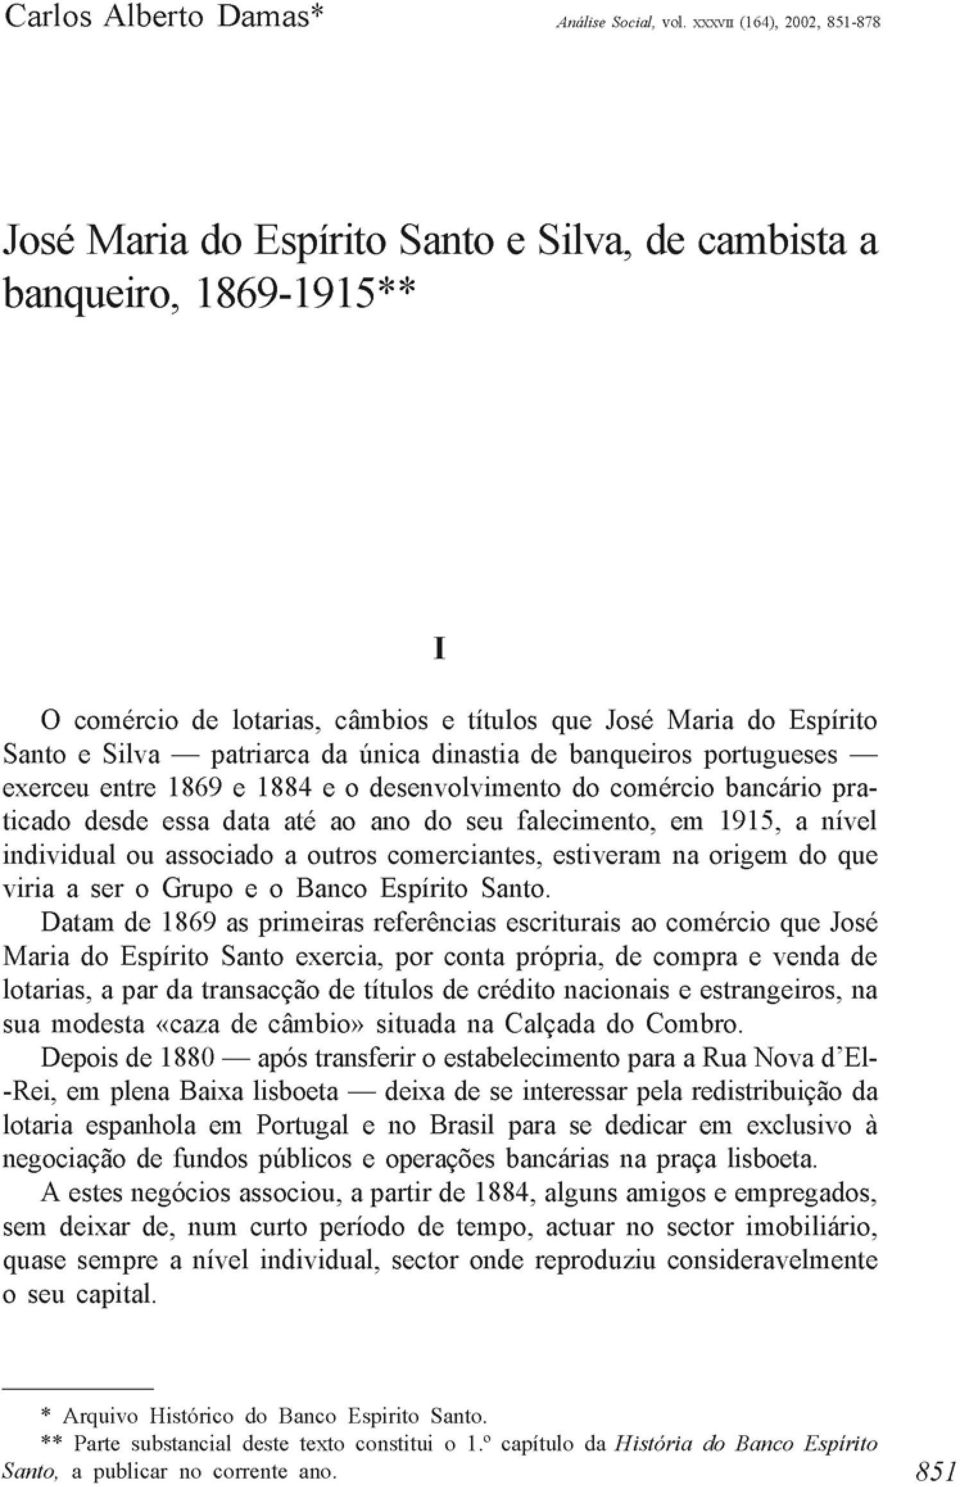 única dinastia de banqueiros portugueses exerceu entre 1869 e 1884 e o desenvolvimento do comércio bancário praticado desde essa data até ao ano do seu falecimento, em 1915, a nível individual ou